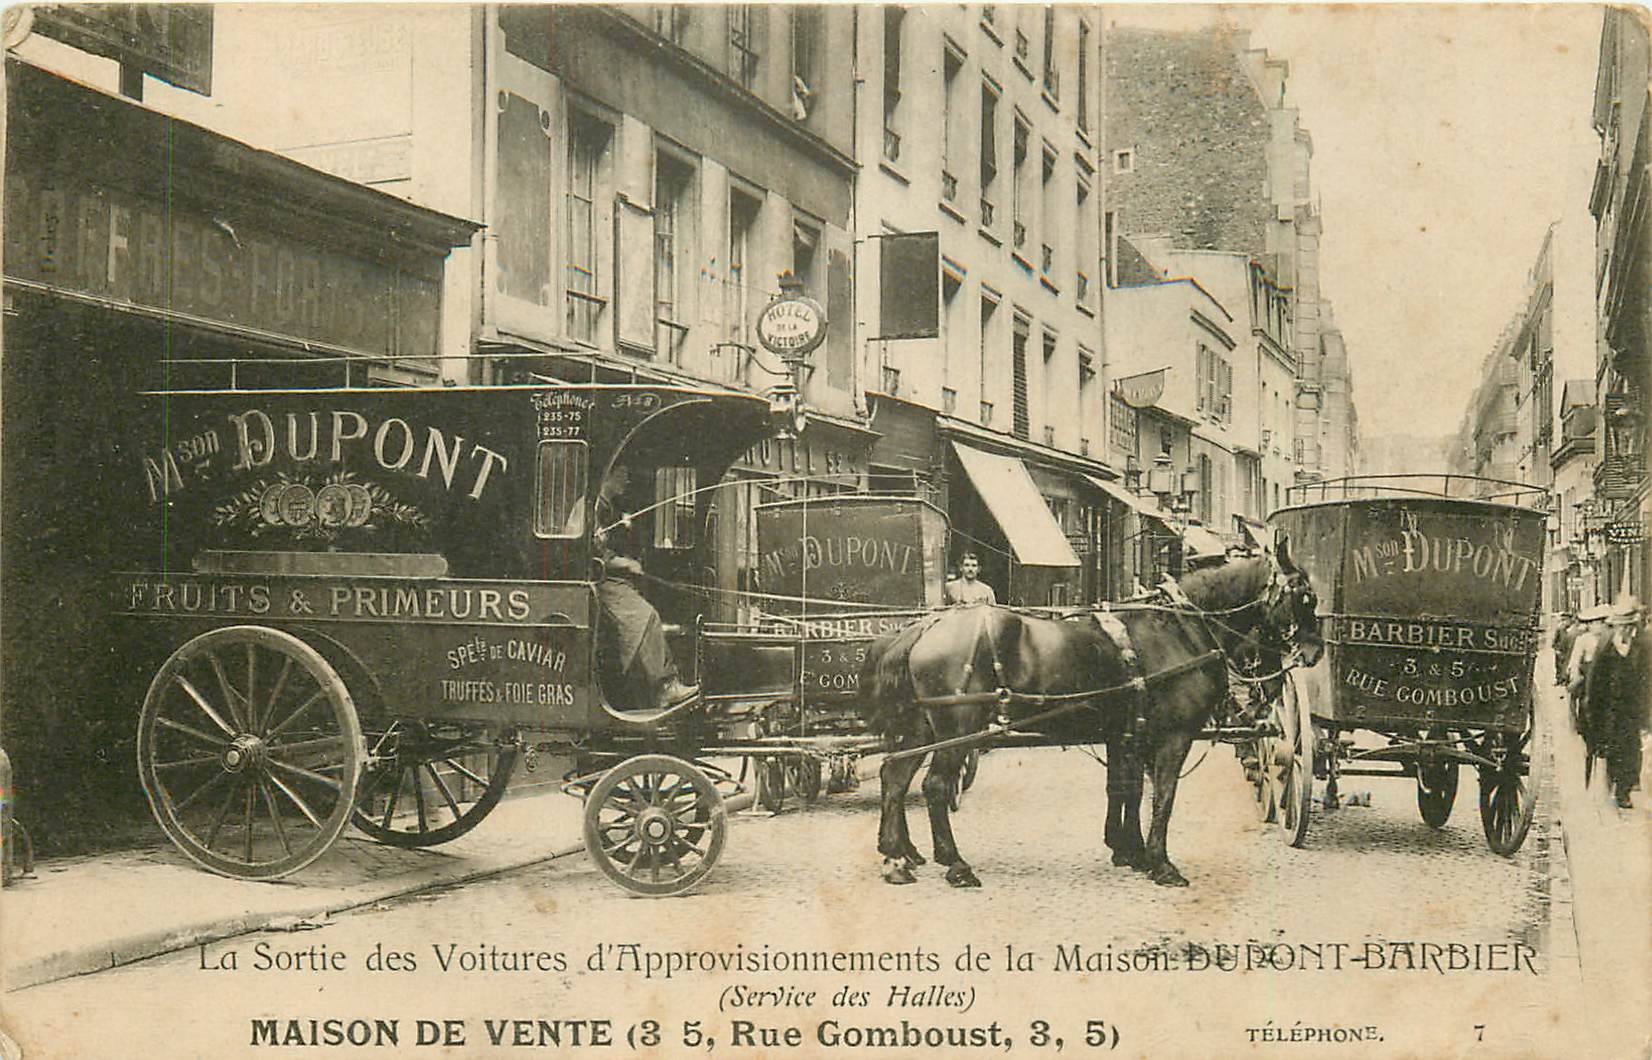 WW PARIS 01. La Sortie des Voitures d'Approvisionnements de la Maison Dupont-Barbier attelages pour les Halles